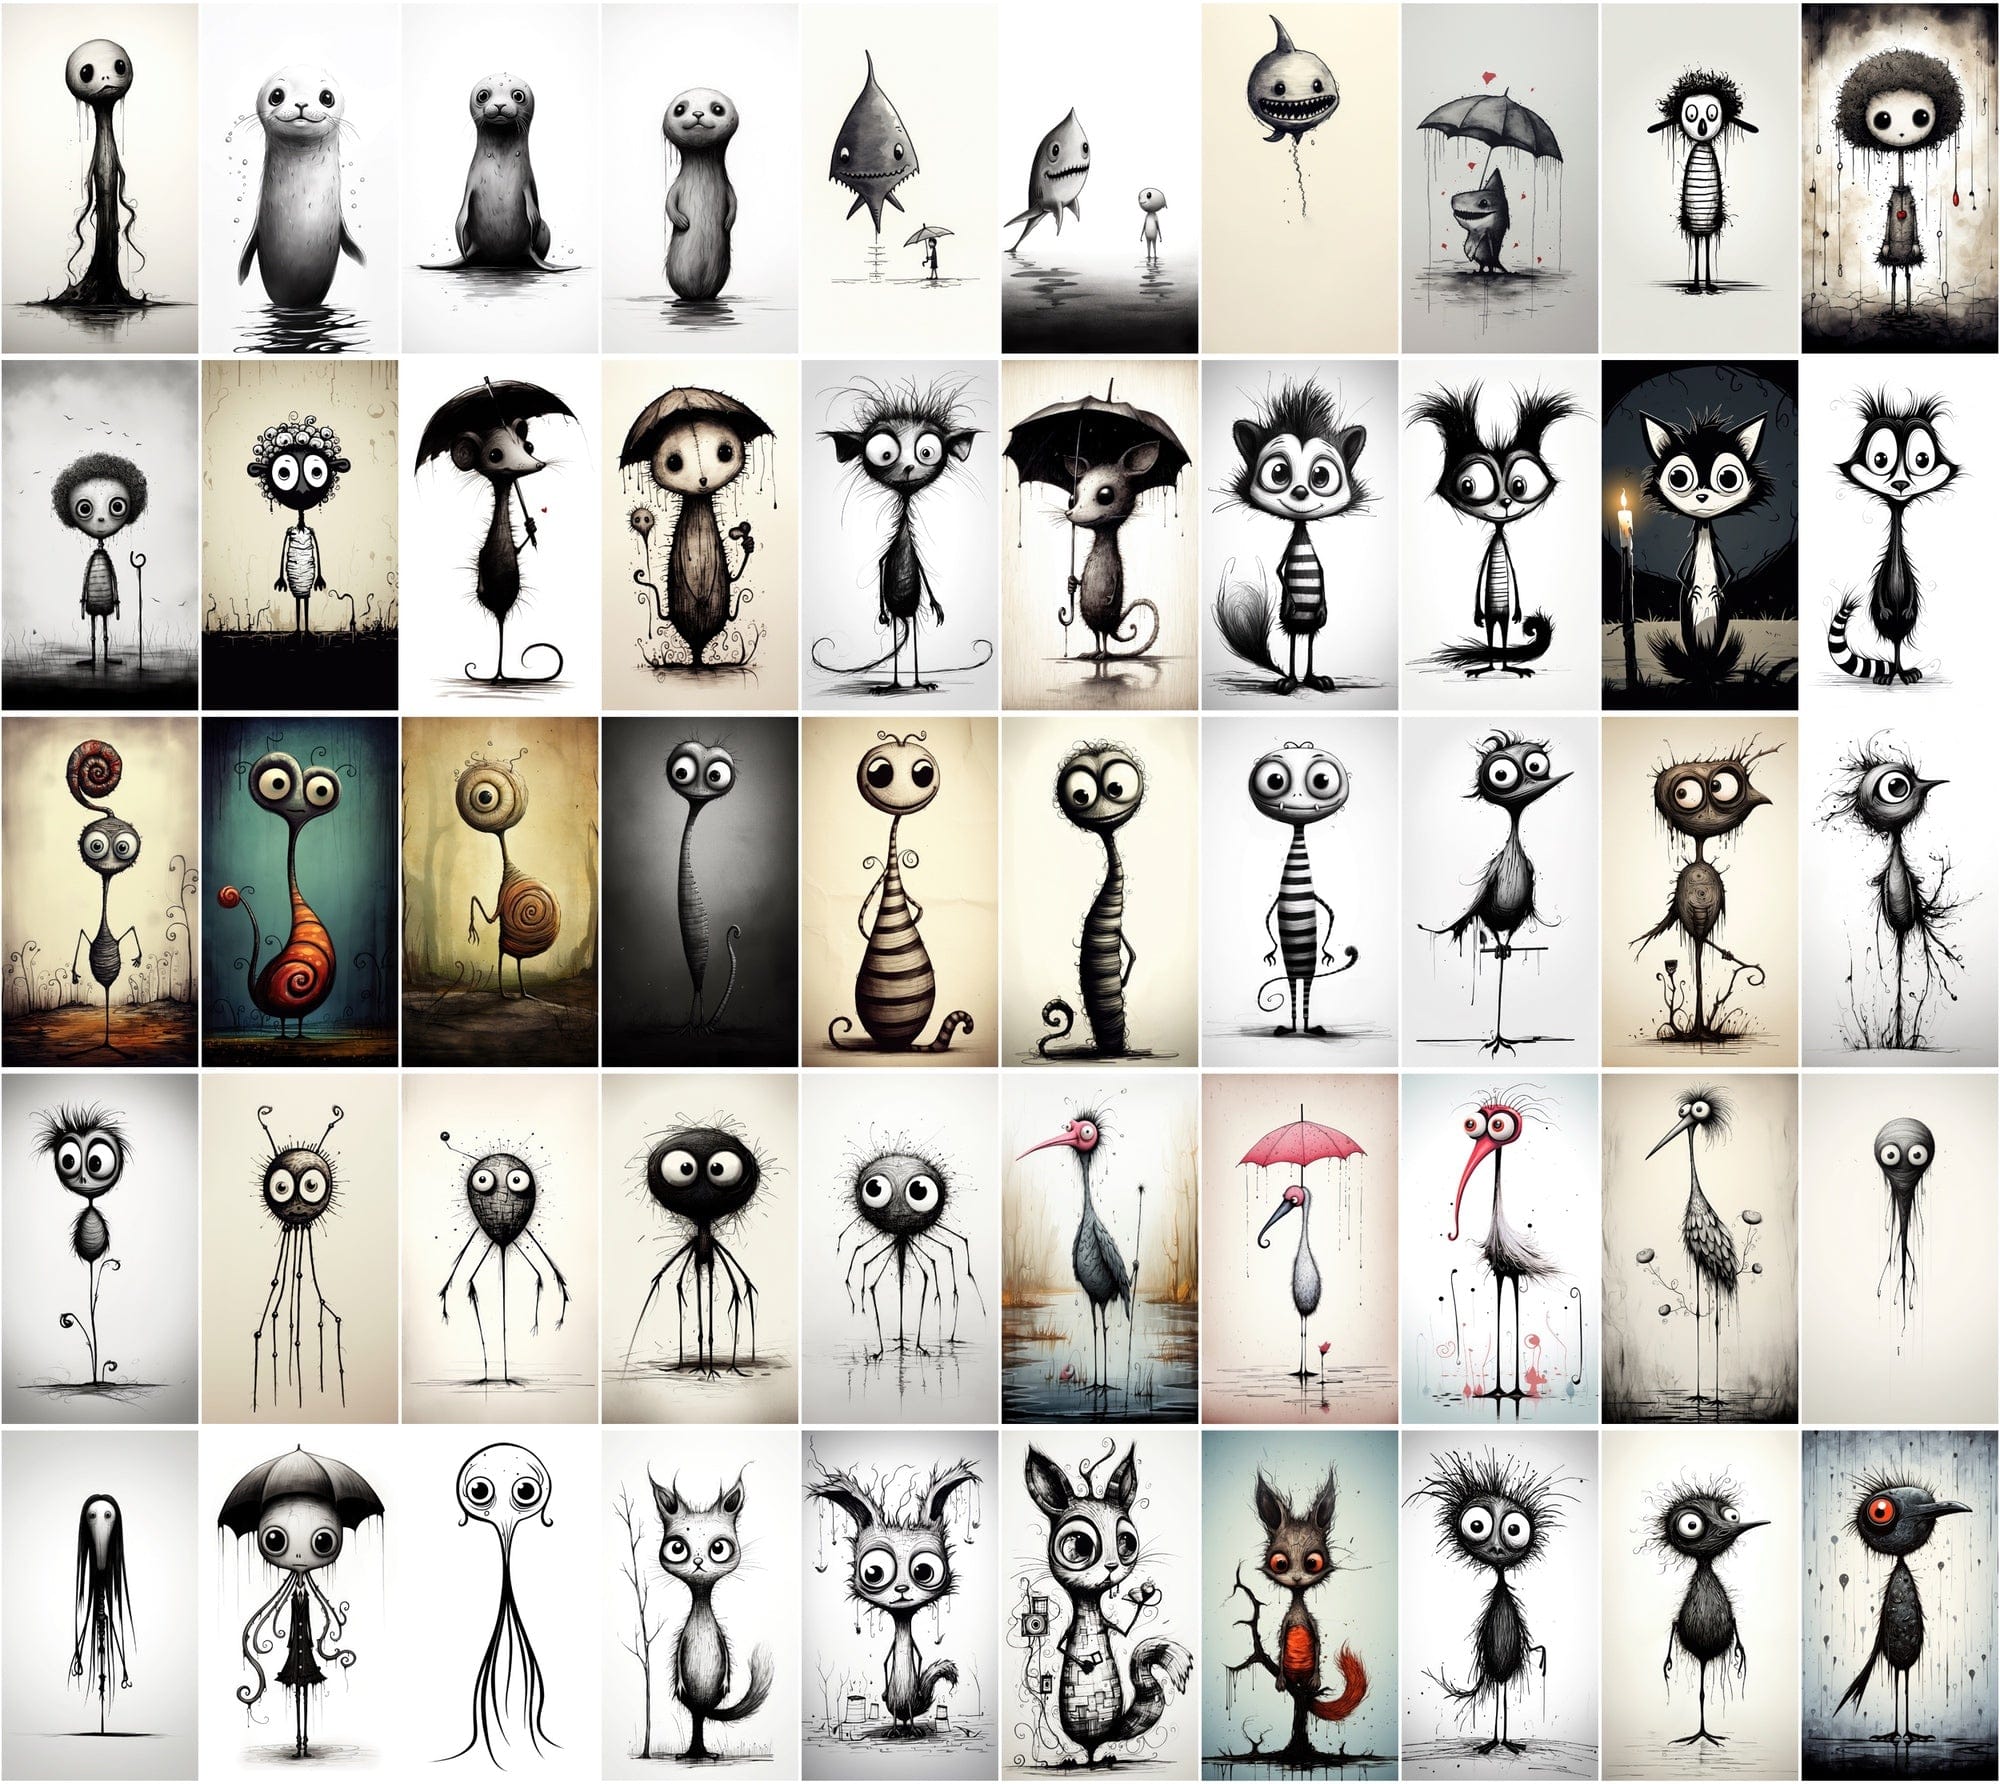 Emotive Surreal Animal Portraits: Monochrome PNG Bundle (770 Images) - Unique & Captivating Digital Download Sumobundle